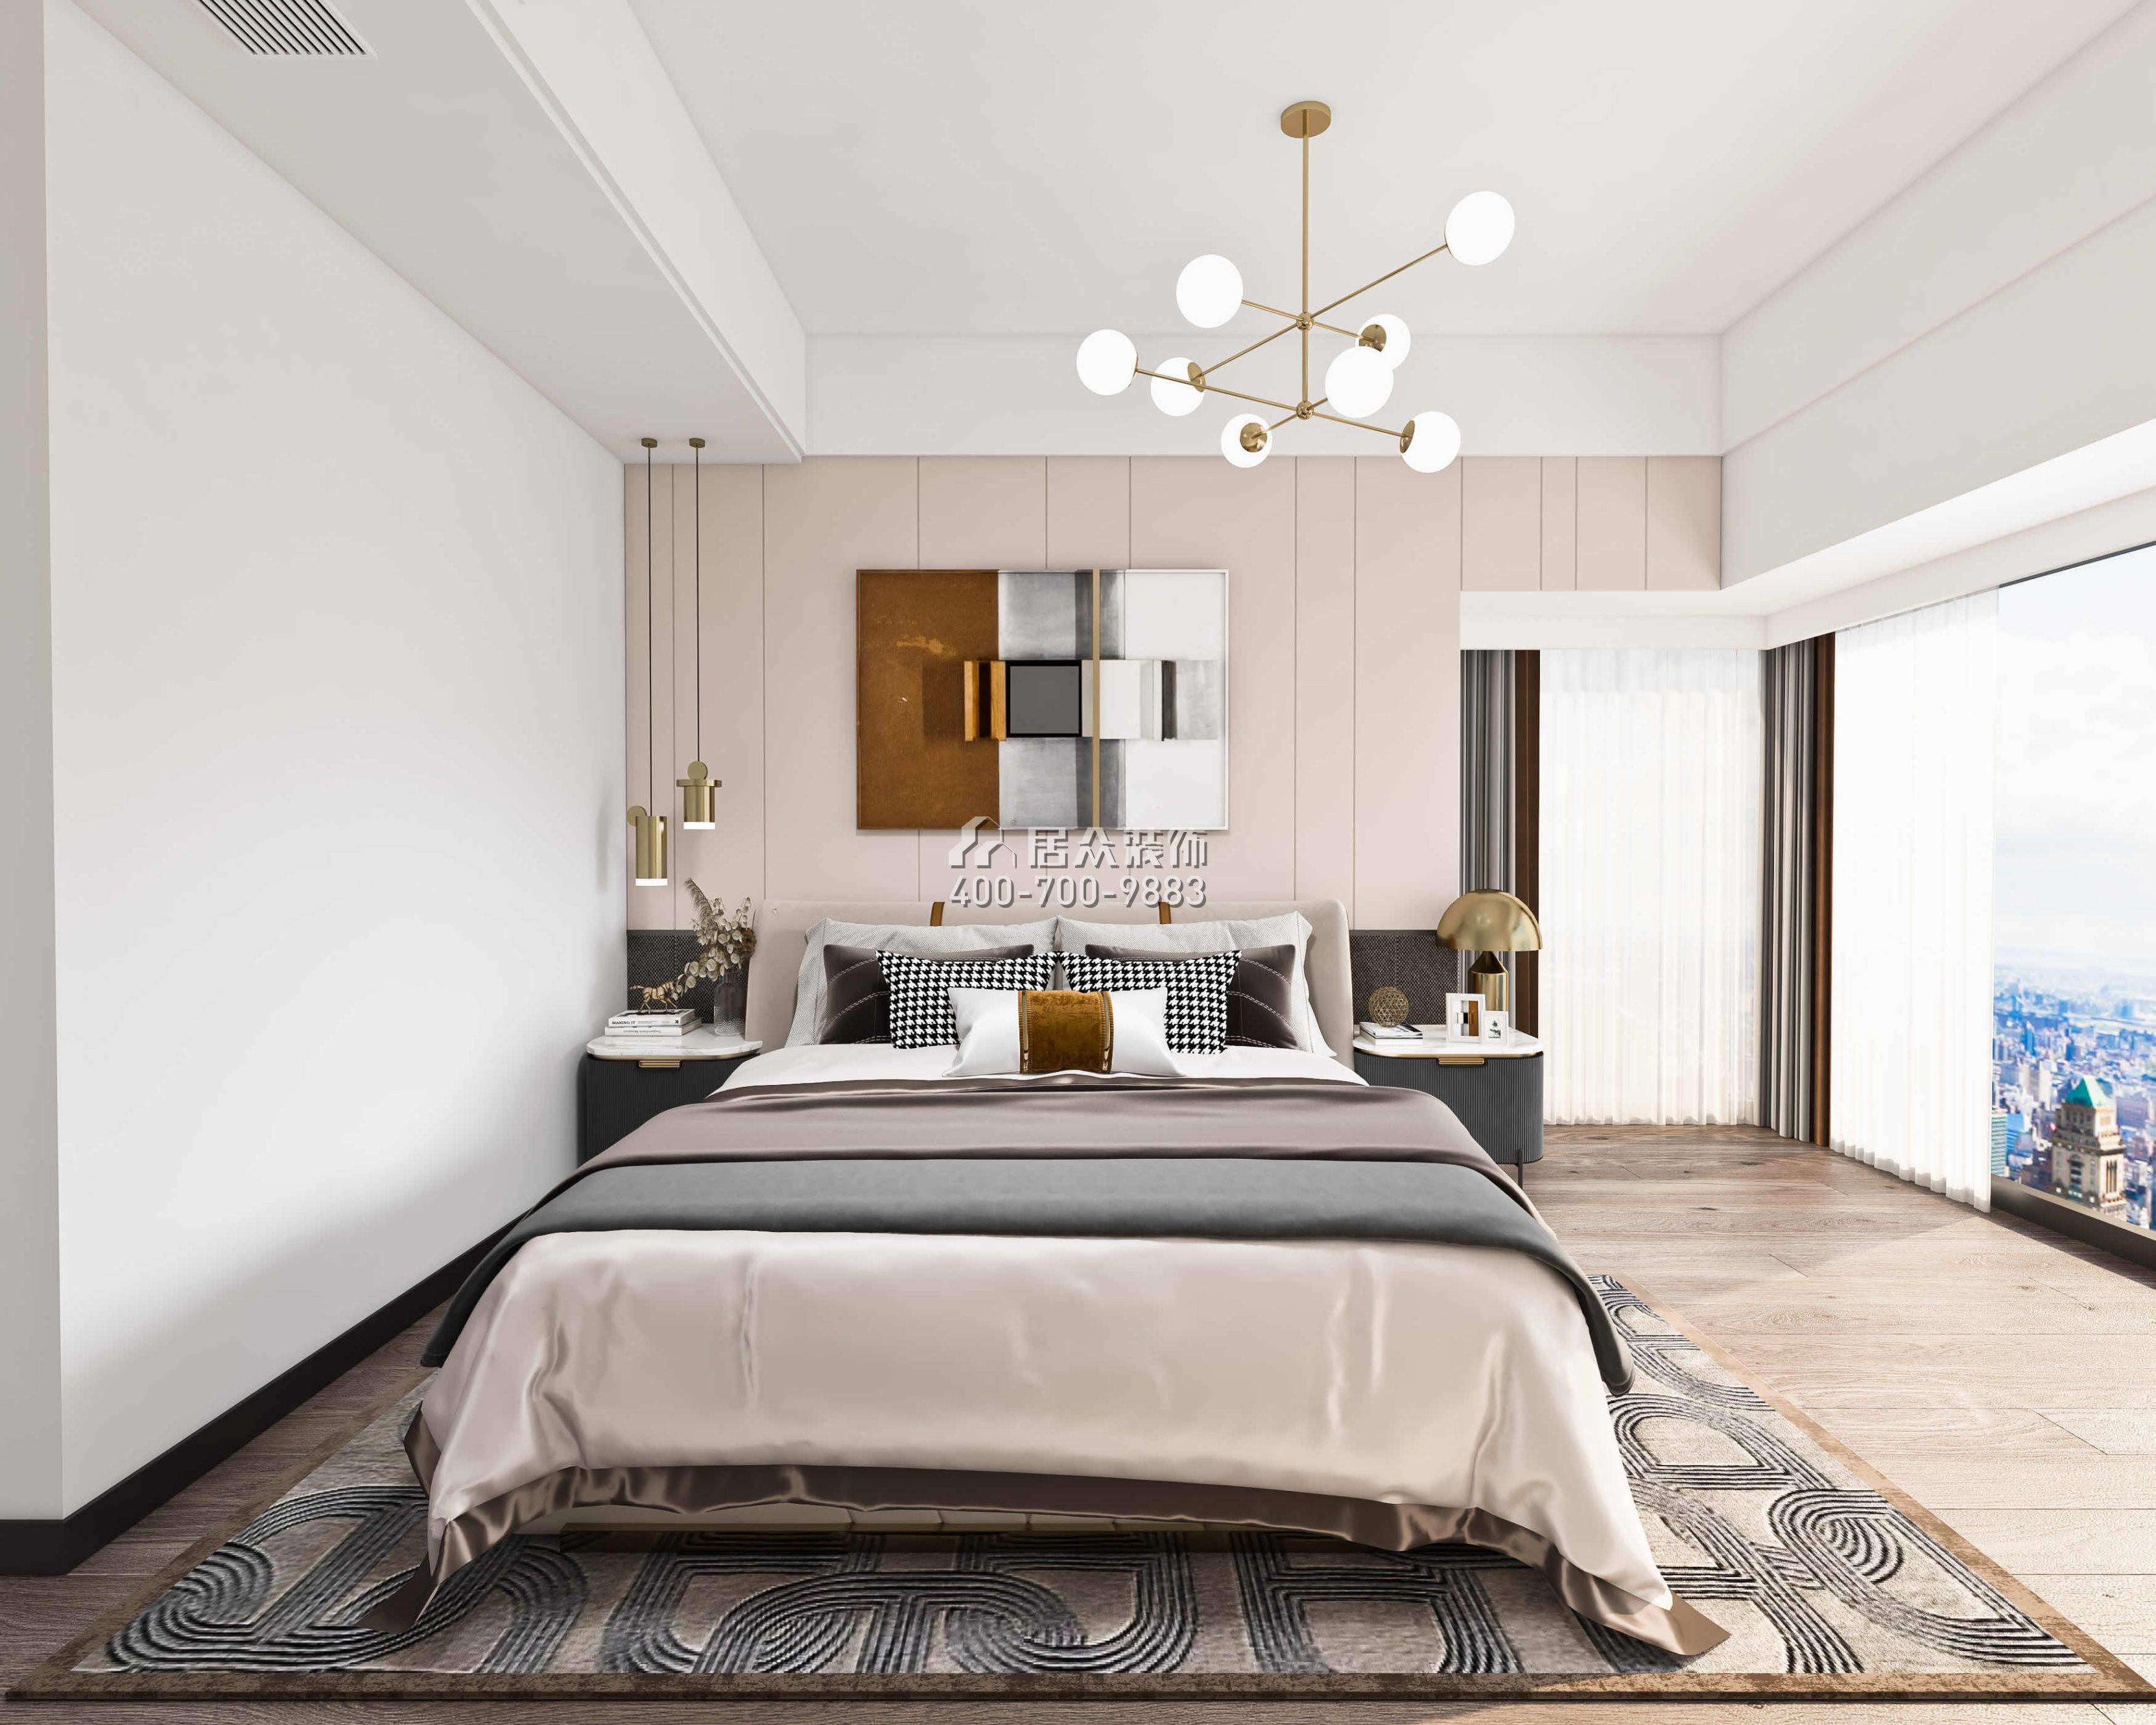 前海丹华园140平方米现代简约风格平层户型卧室装修效果图